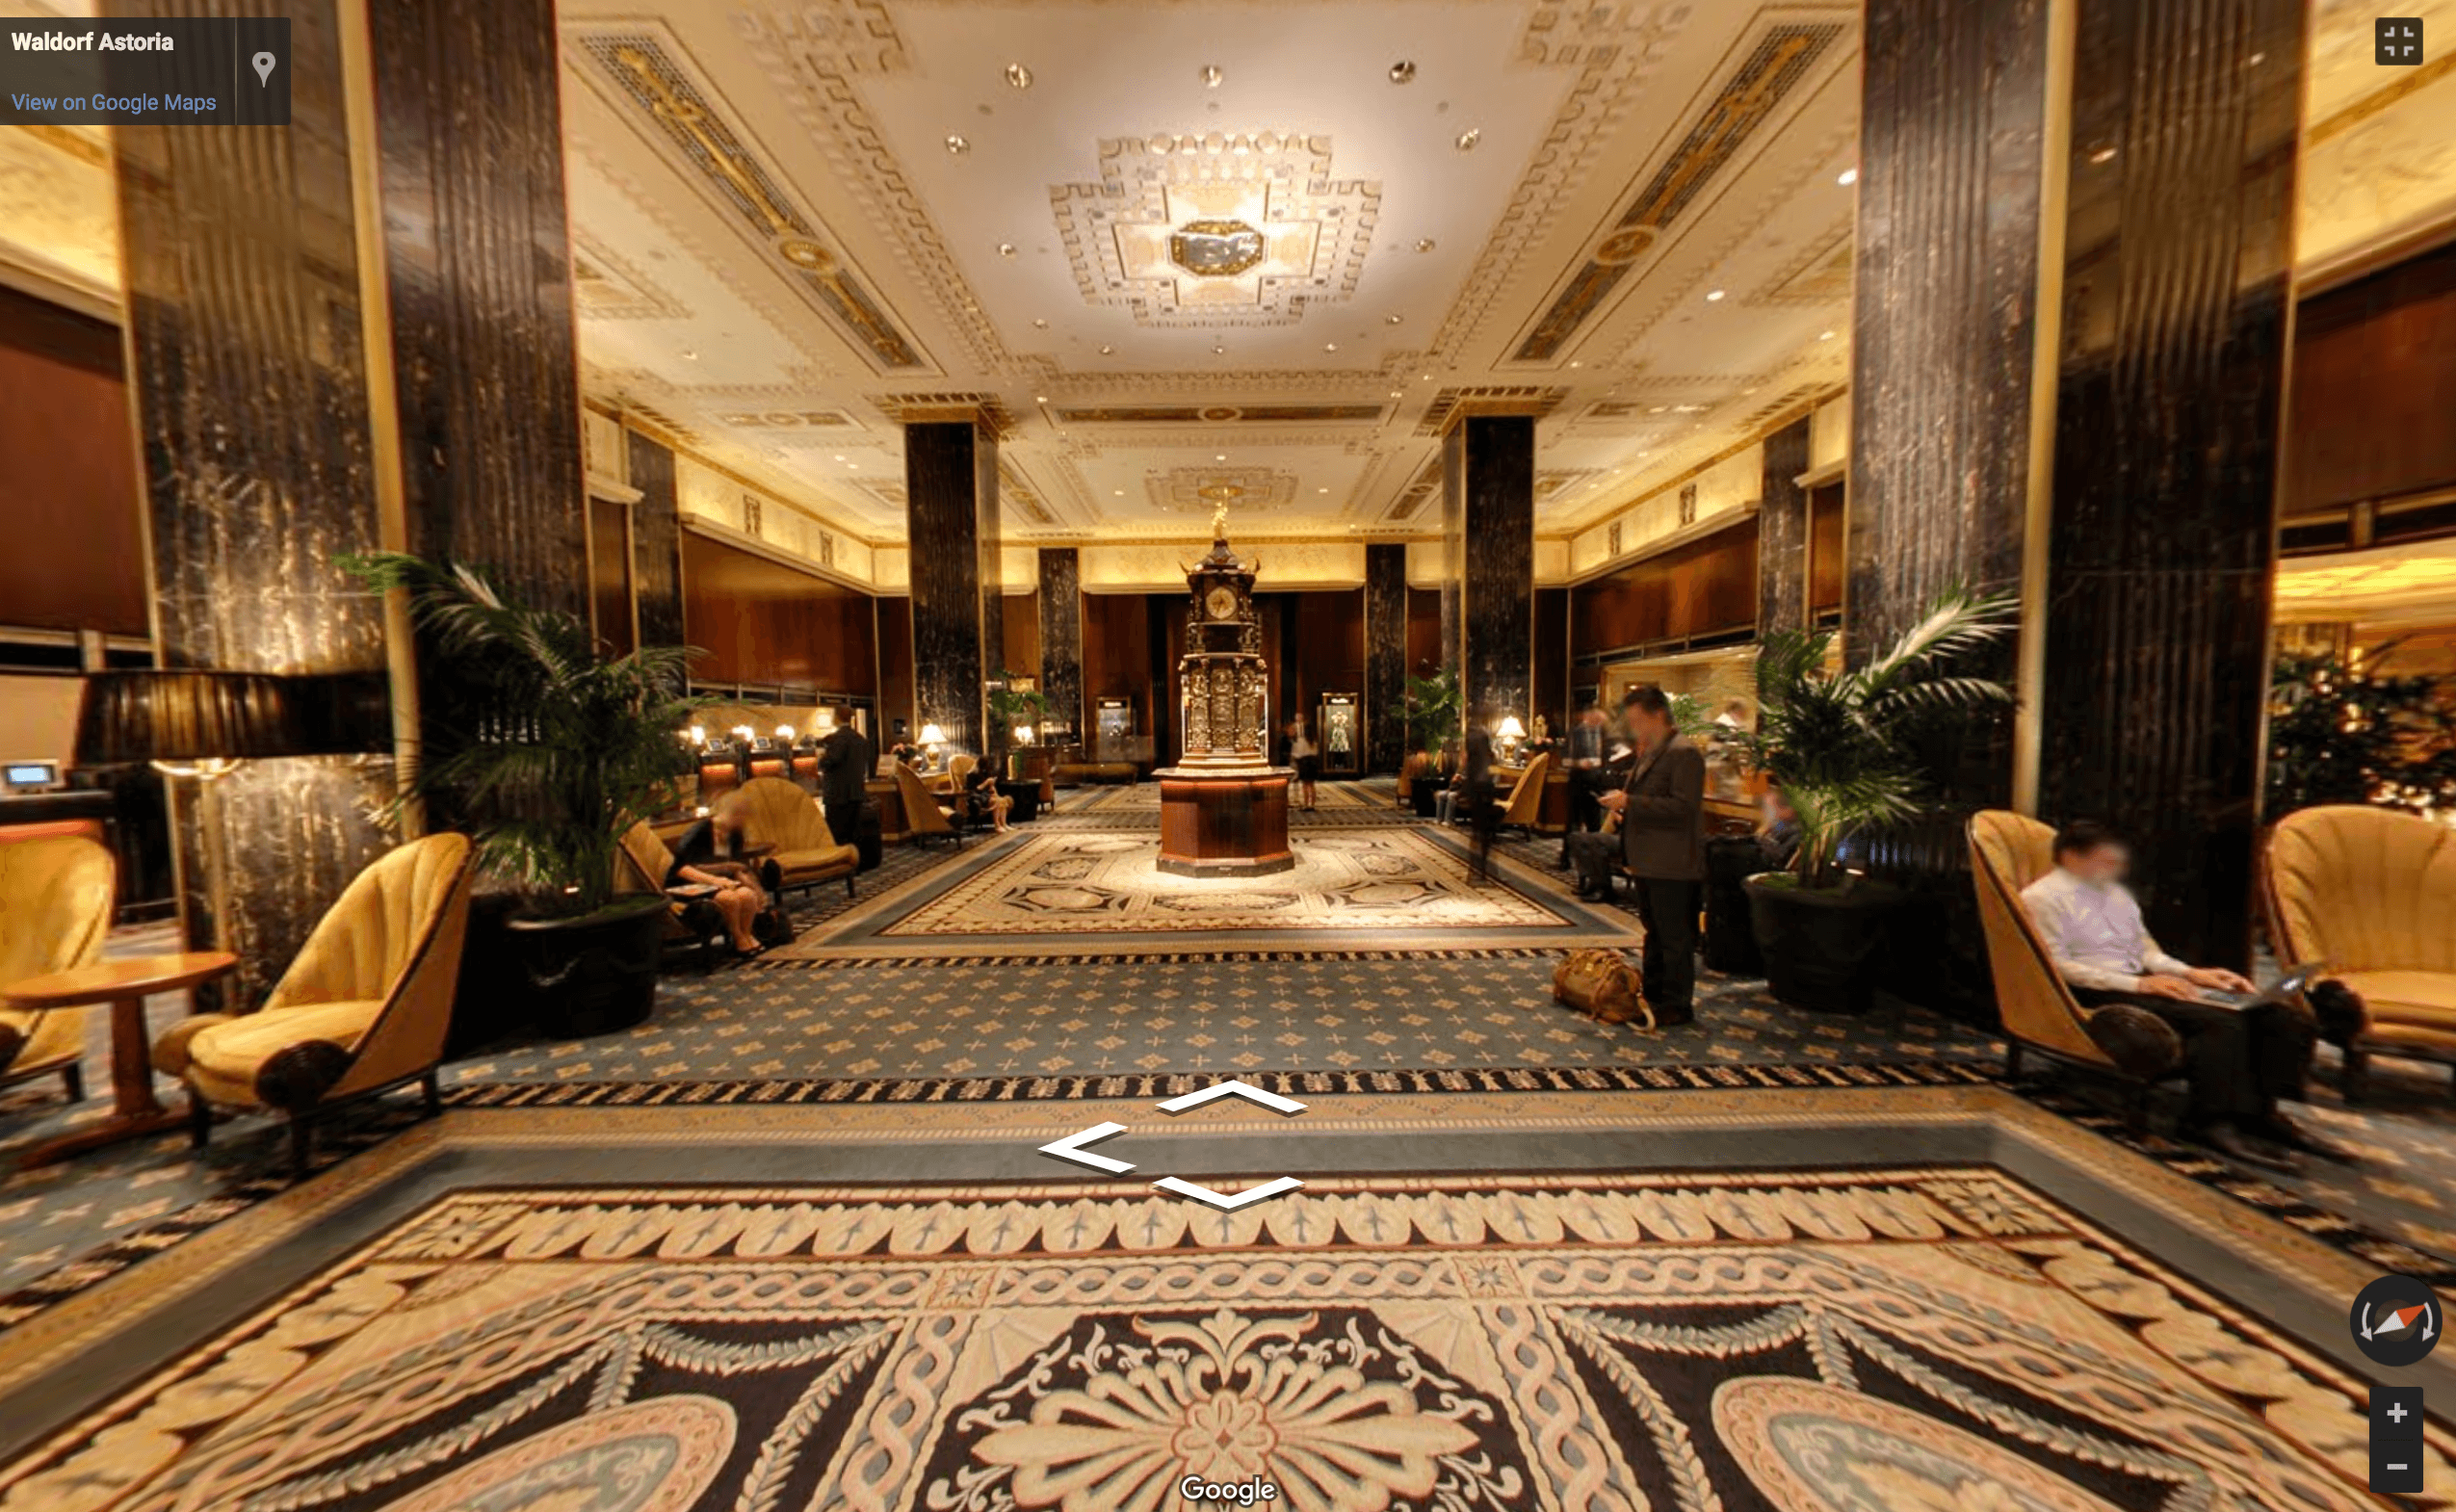 Waldorf-Astoria-Google-tour.png